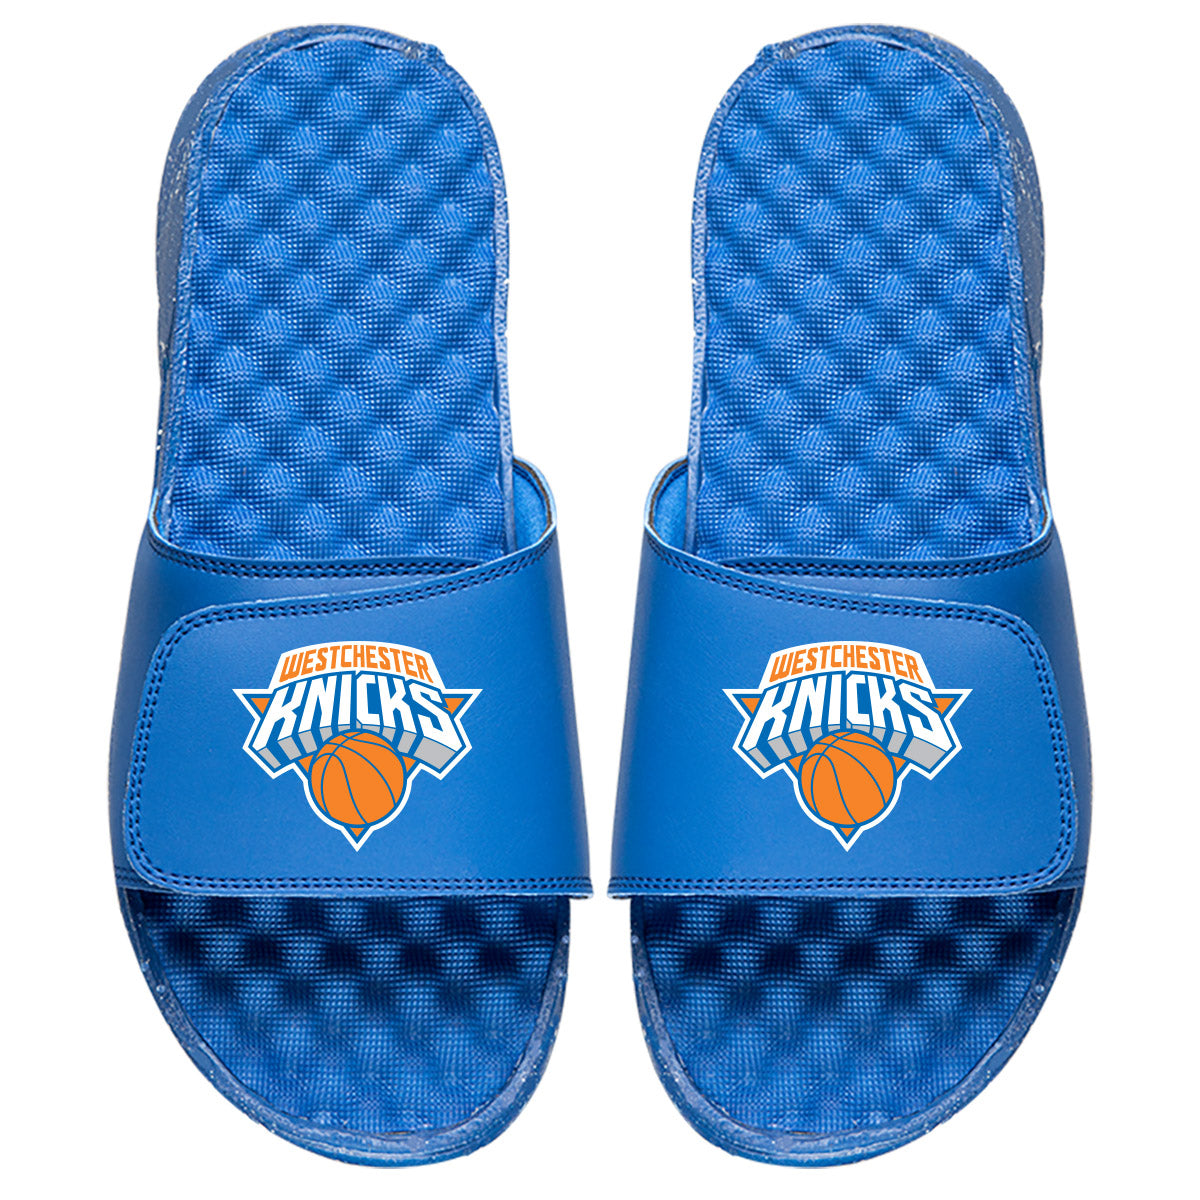 Westchester Knicks Slides